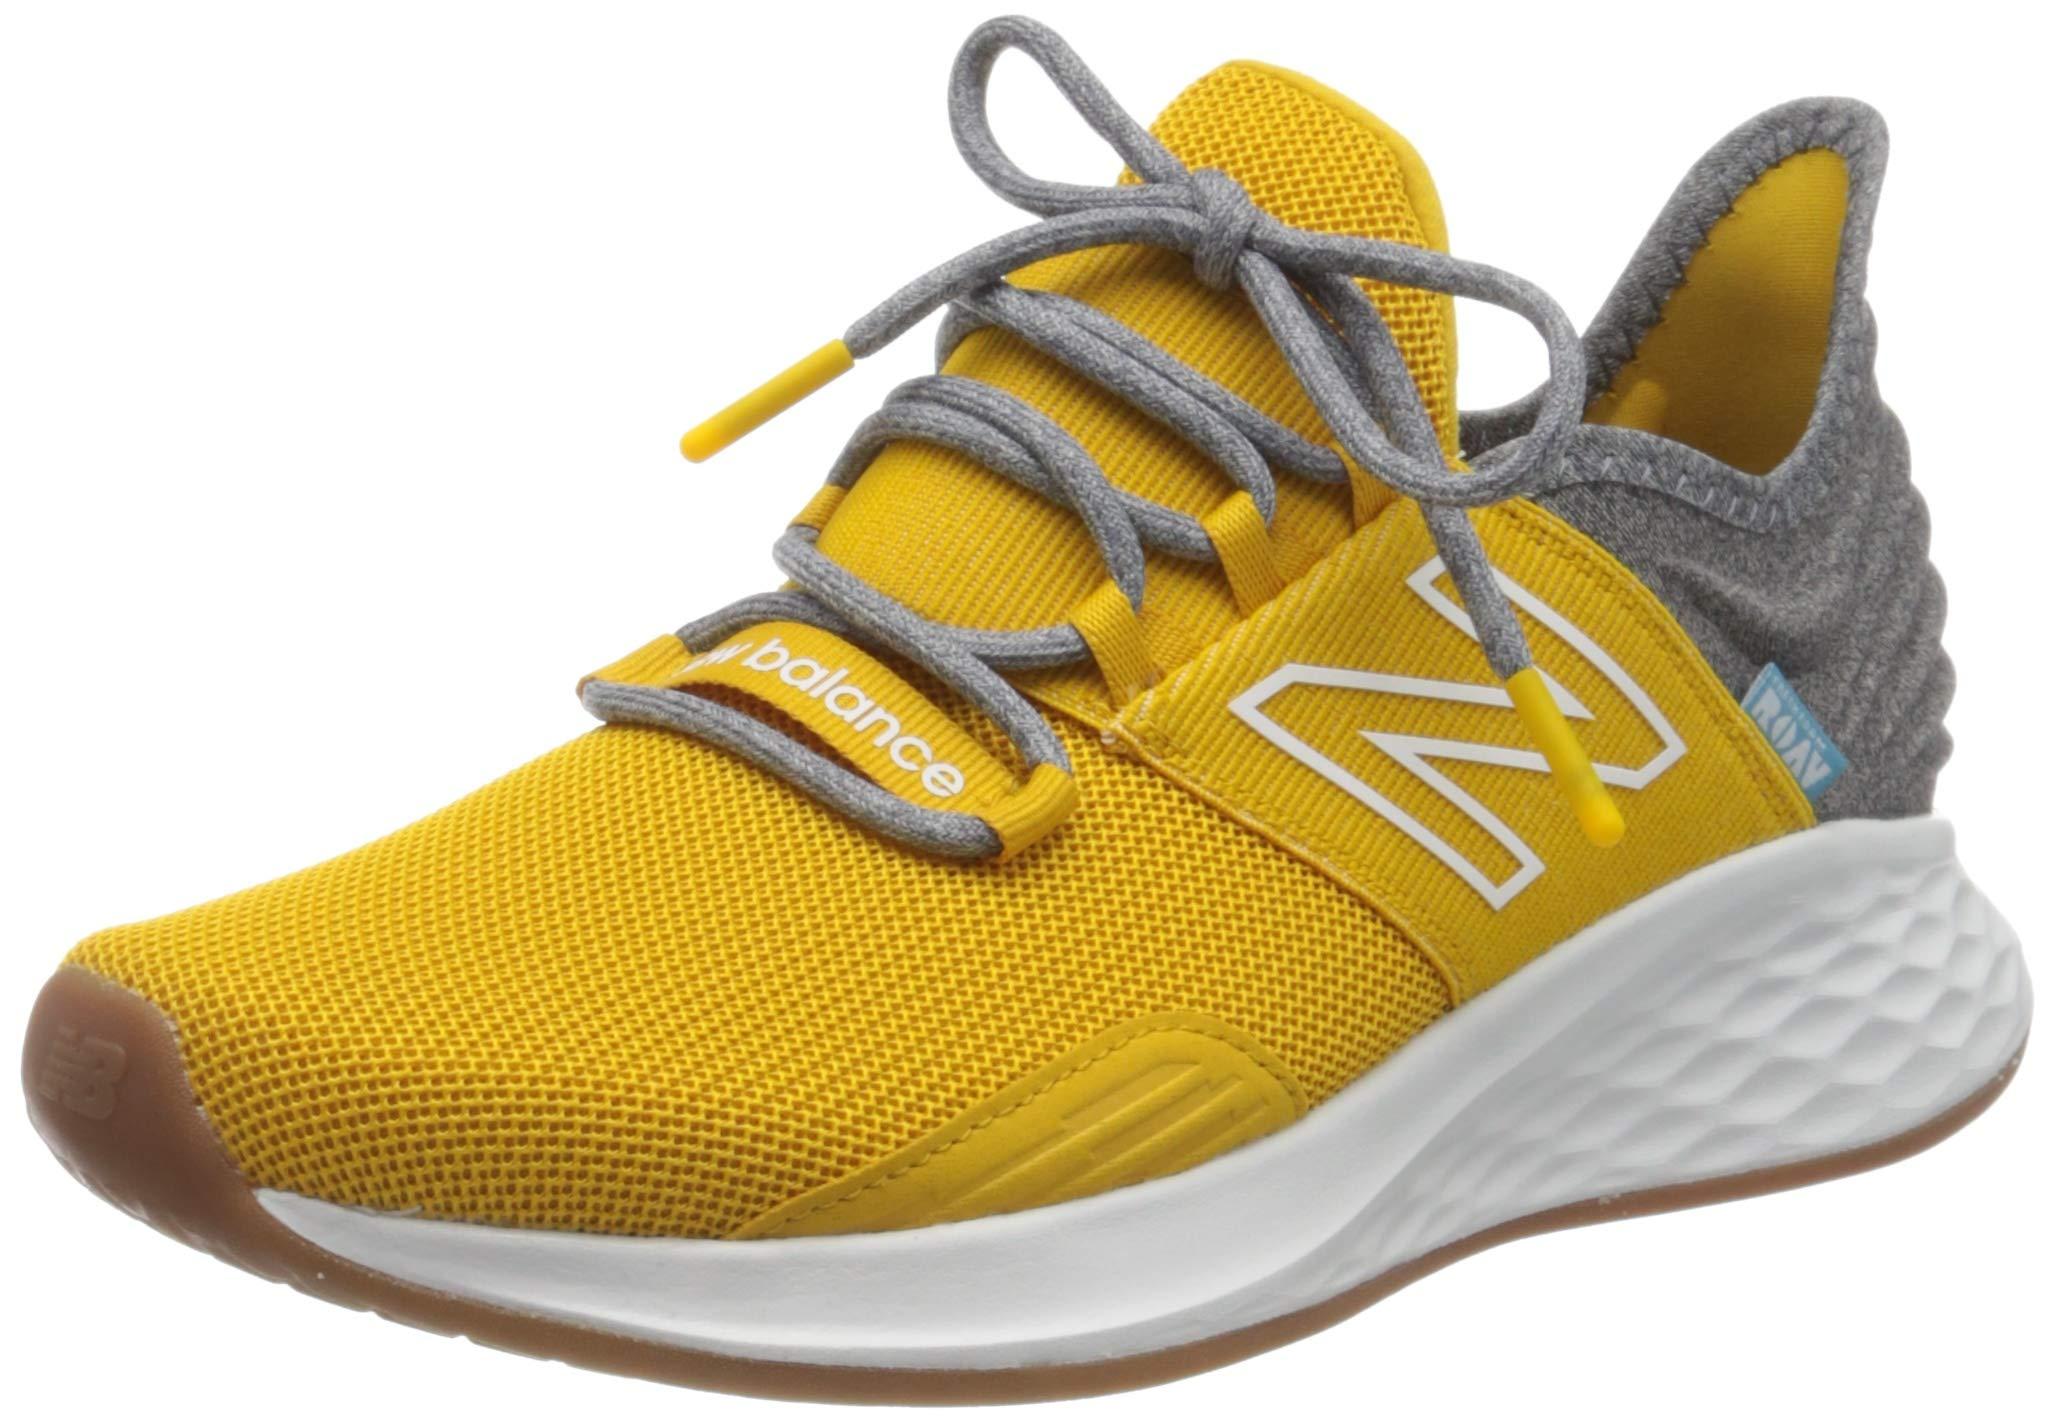 New Balance Rubber Fresh Foam Roav V1 Sneaker in Yellow for Men - Lyst